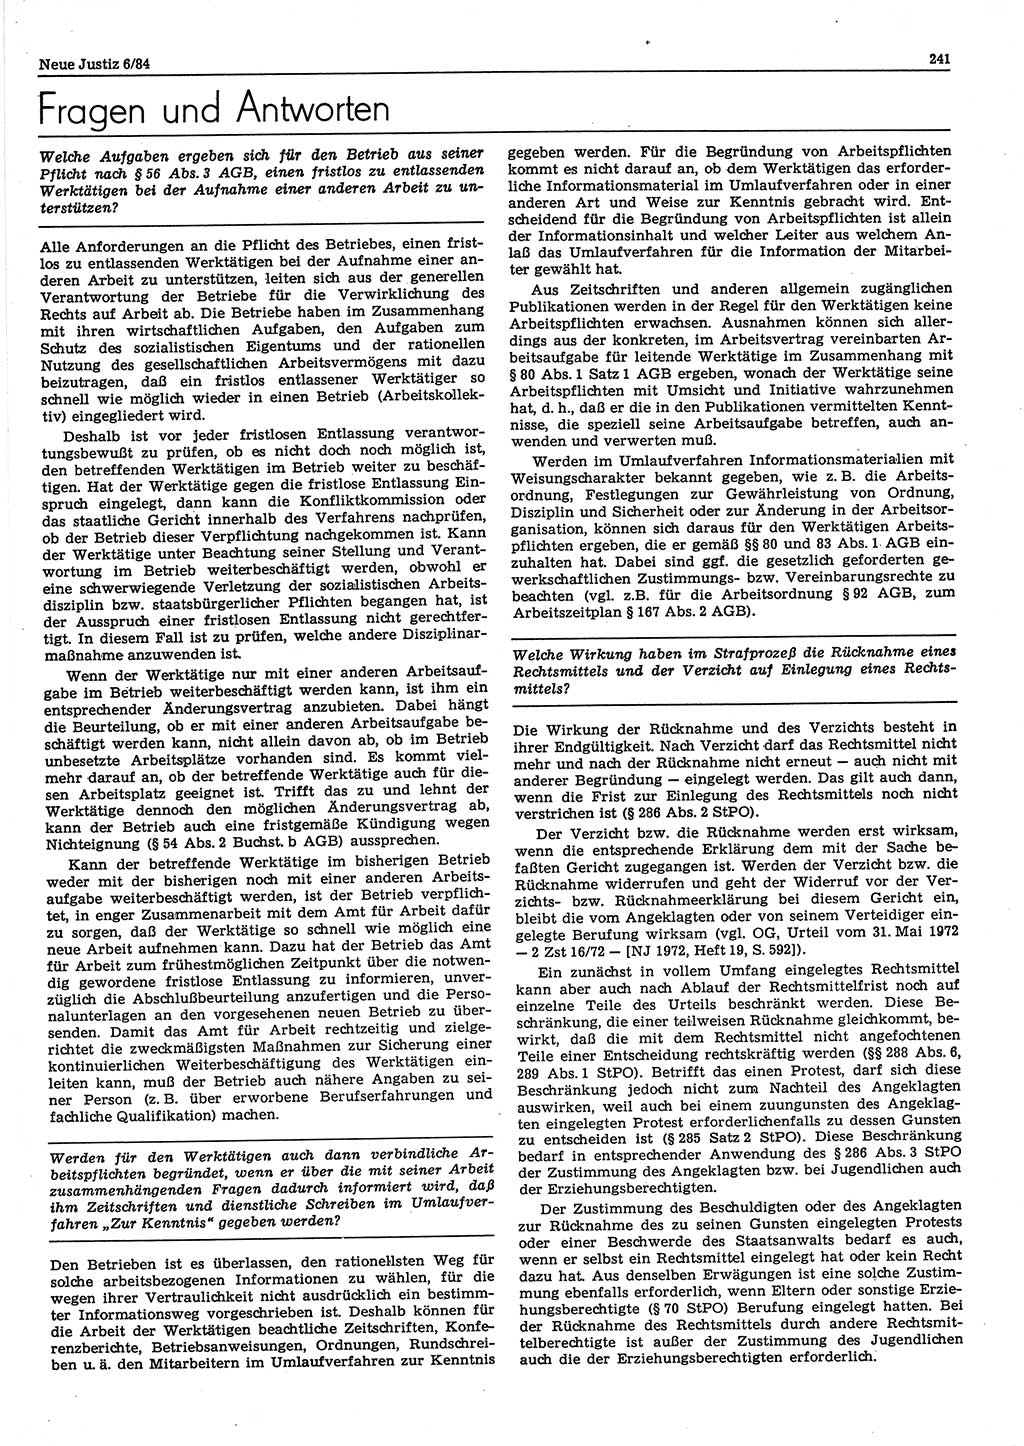 Neue Justiz (NJ), Zeitschrift für sozialistisches Recht und Gesetzlichkeit [Deutsche Demokratische Republik (DDR)], 38. Jahrgang 1984, Seite 241 (NJ DDR 1984, S. 241)